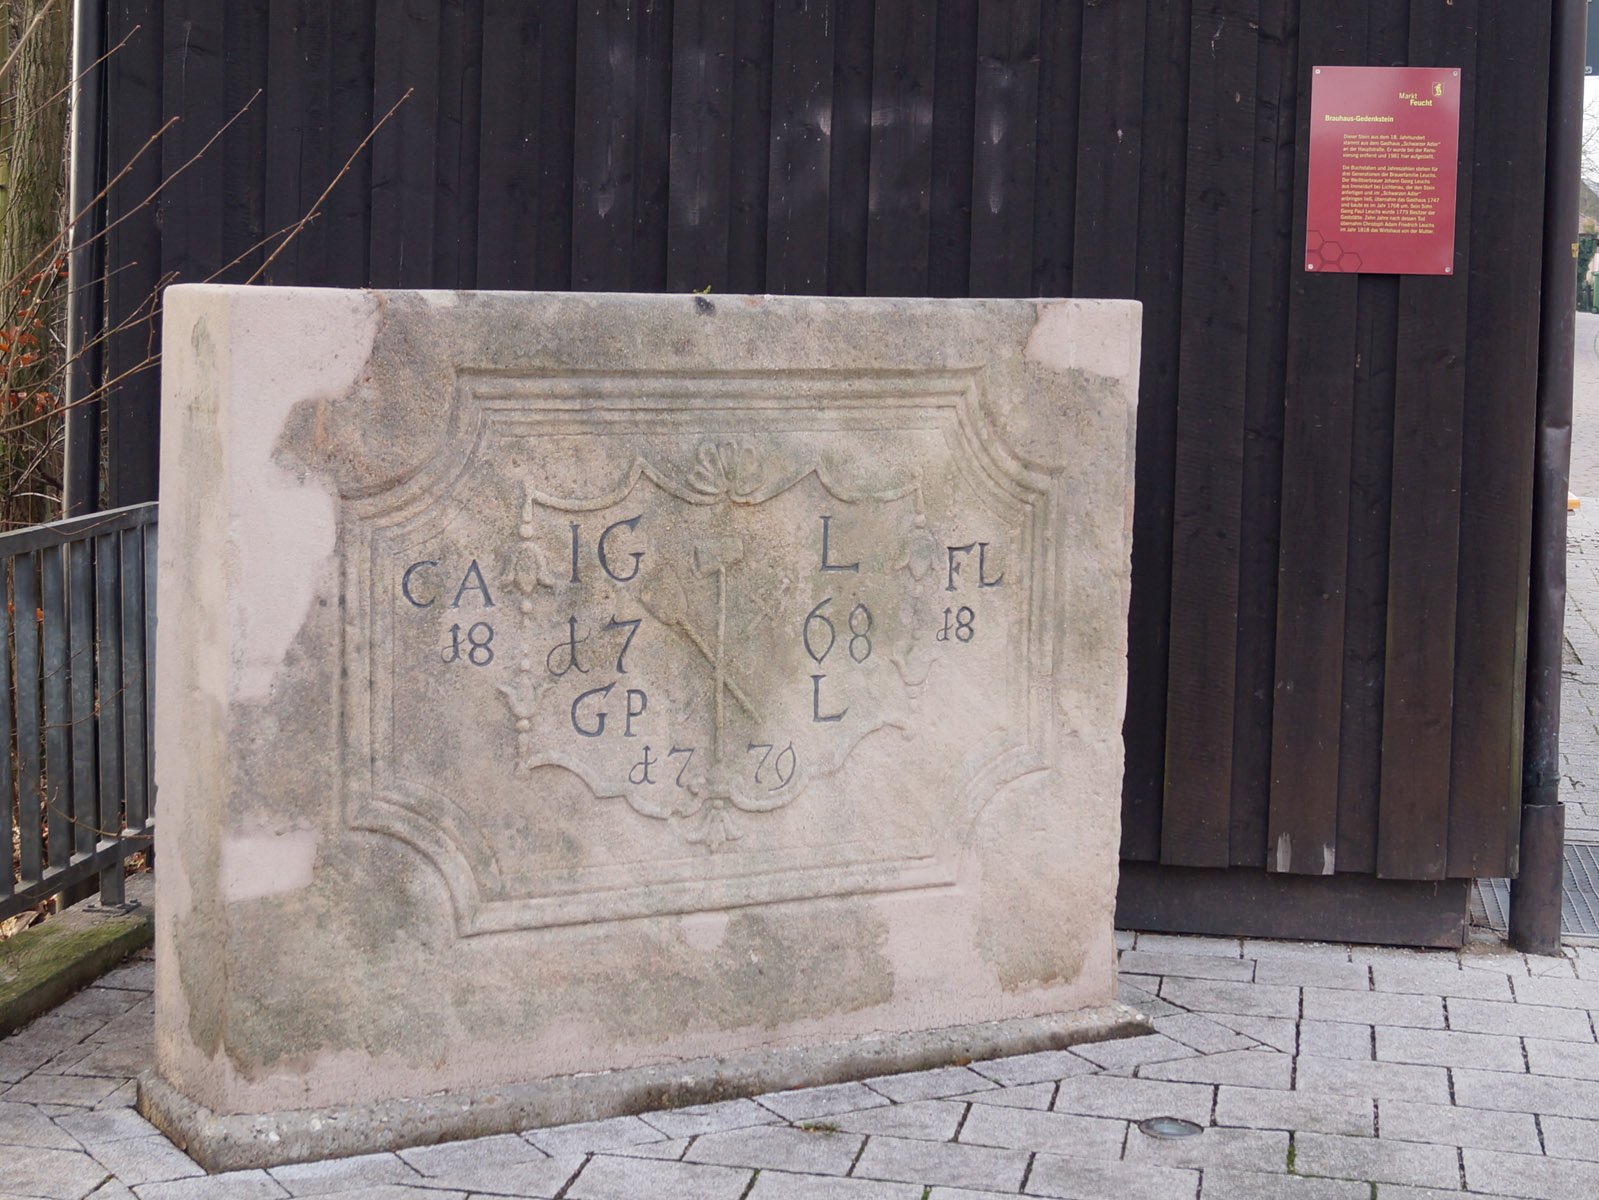 Der Stein aus dem 18. Jahrhundert zeigt die Inschrift von drei Generationen der Brauerfamilie Leuchs